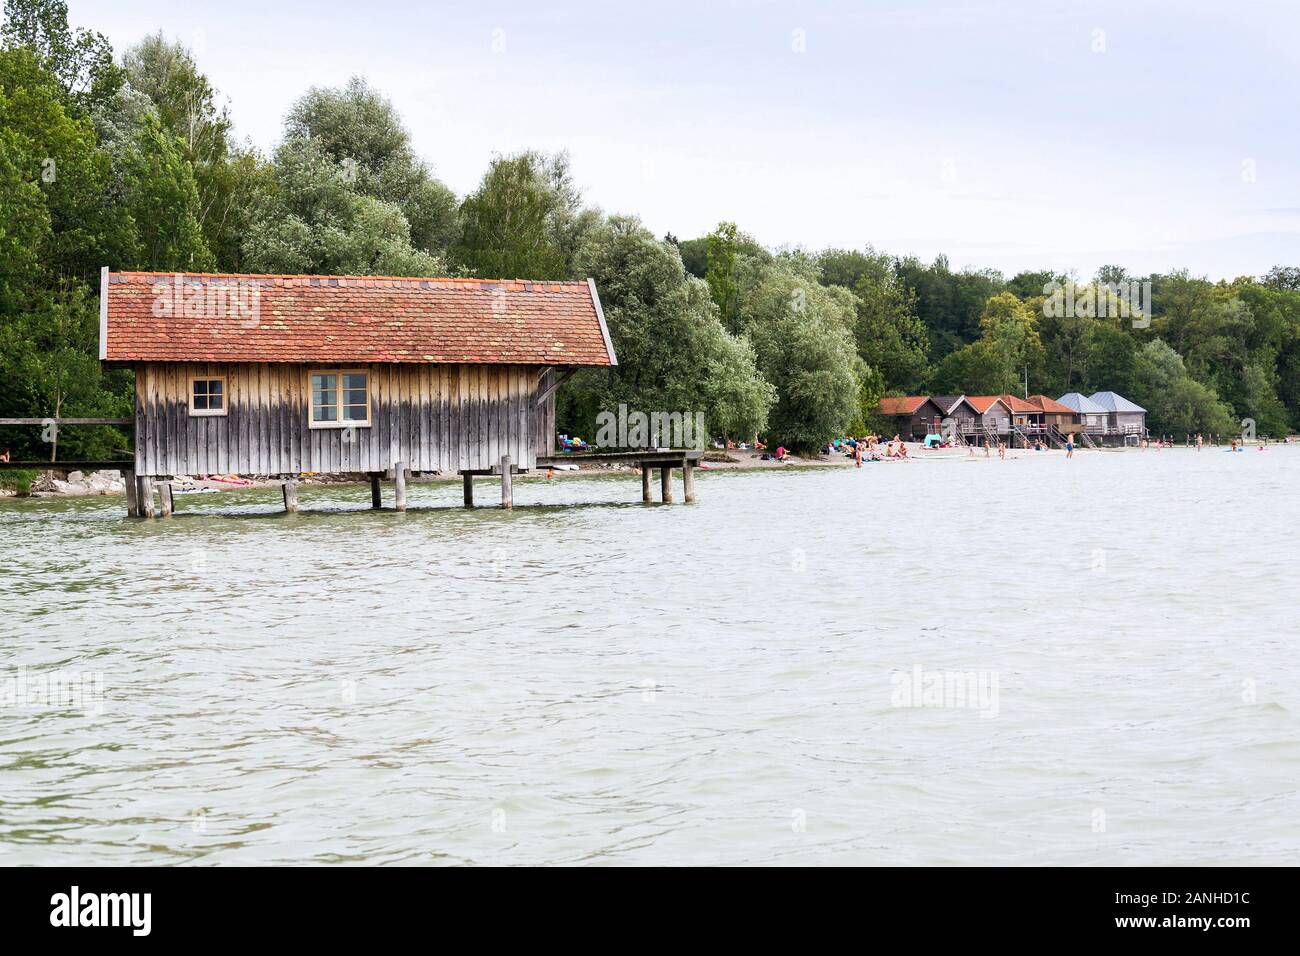 Ferienhaus aus Holz auf Pier auf dem Ammersee in Inning am Ammersee,  Deutschland Stockfotografie - Alamy